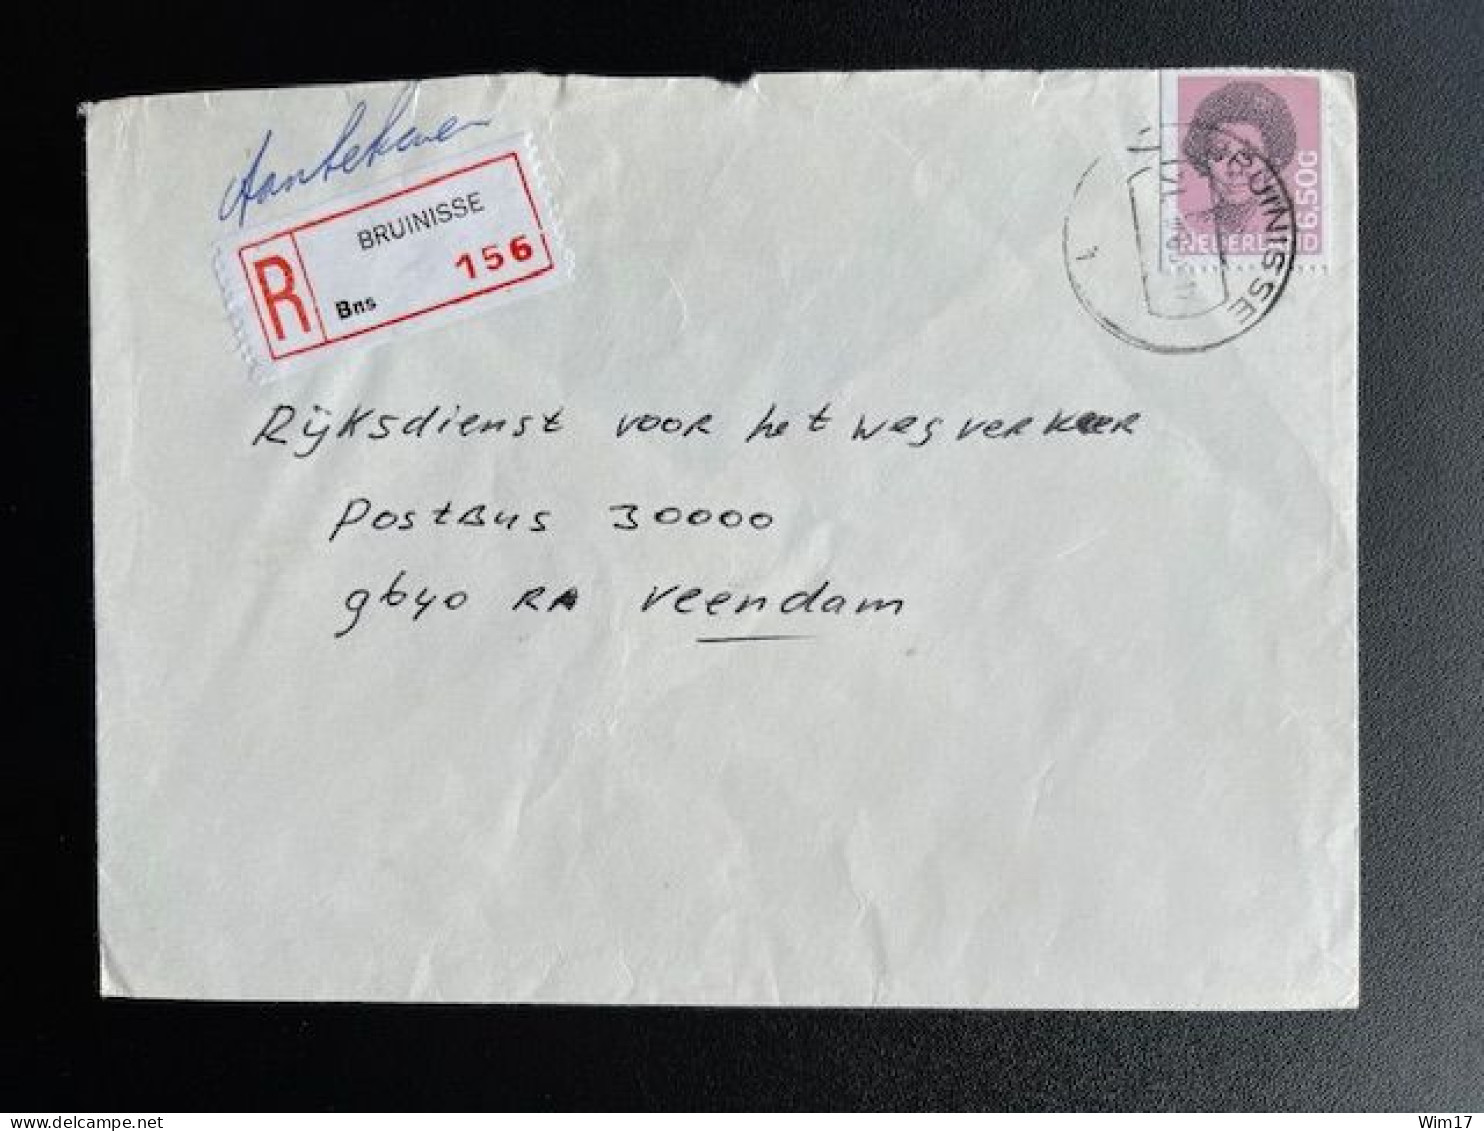 NETHERLANDS 1983 REGISTERED LETTER BRUINISSE TO VEENDAM 21-03-1983 NEDERLAND AANGETEKEND - Briefe U. Dokumente